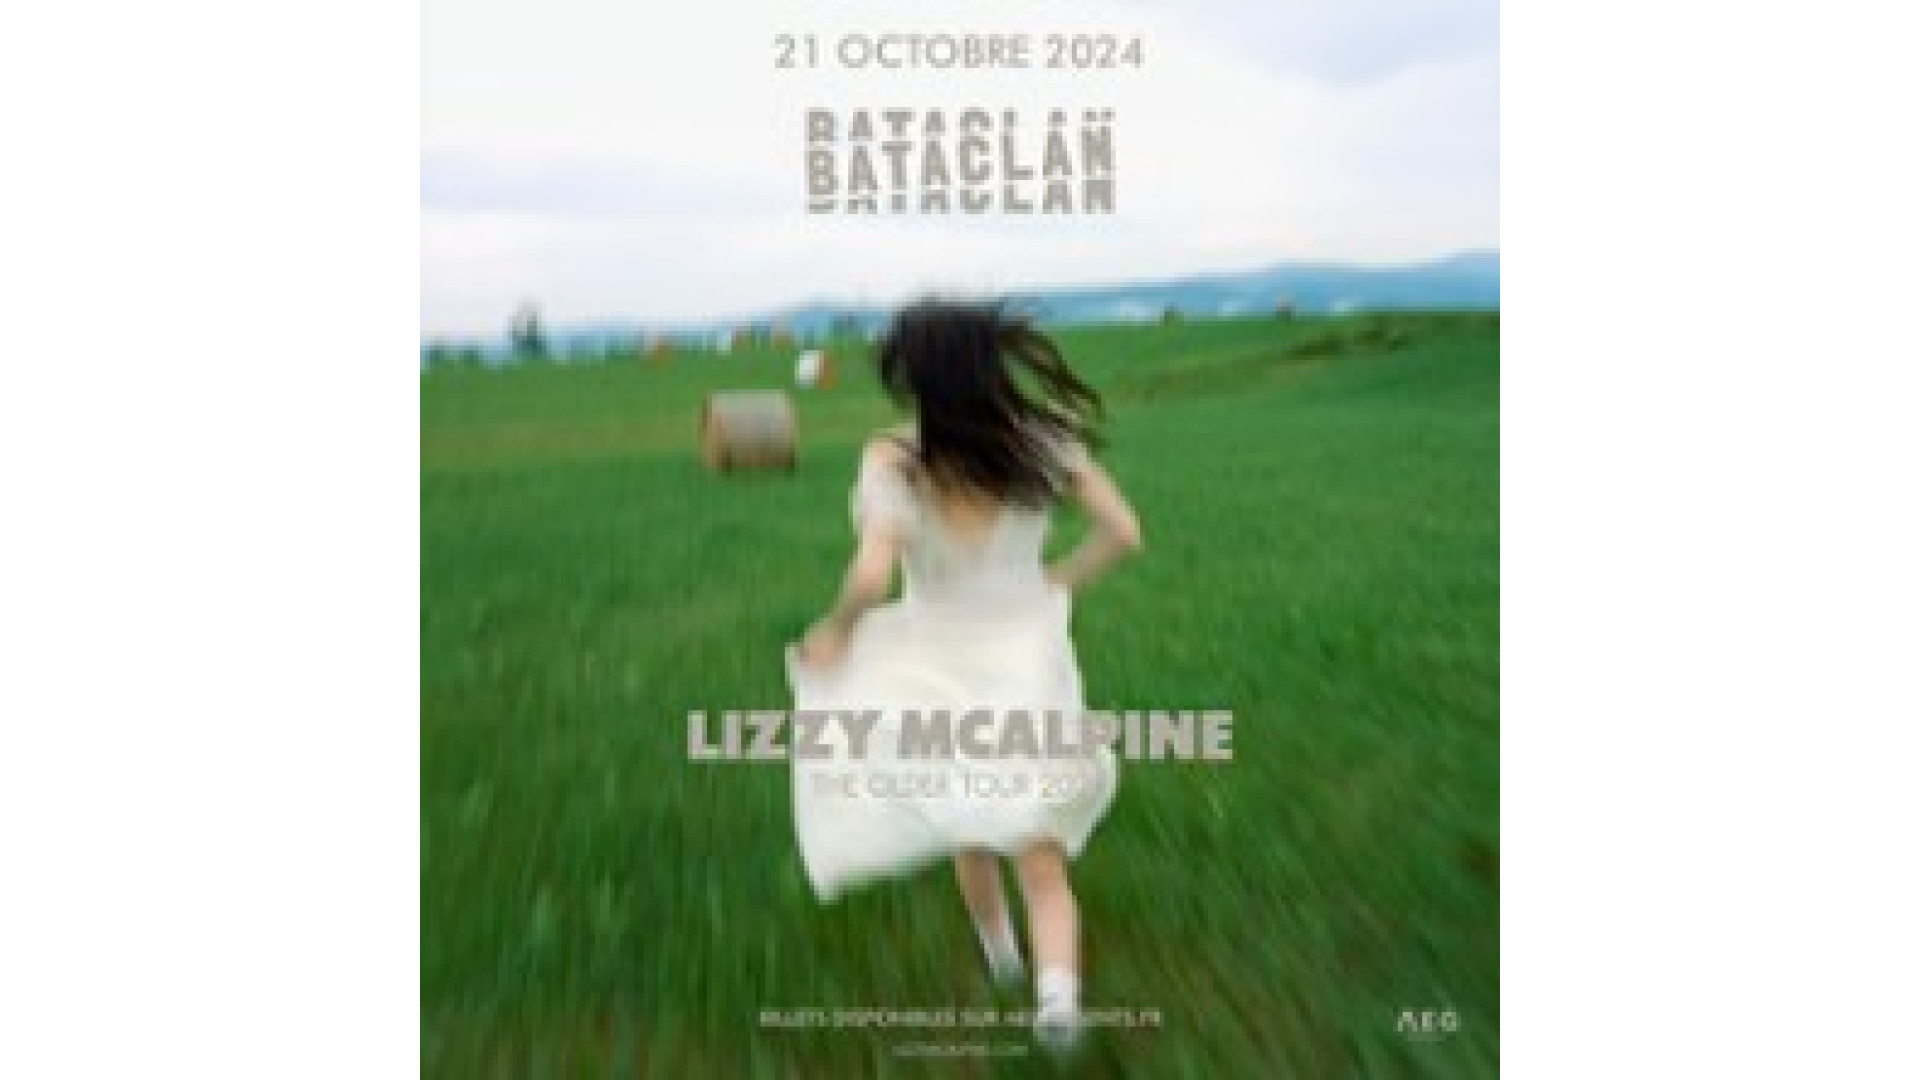 Concert Lizzy Mcalpine à Paris